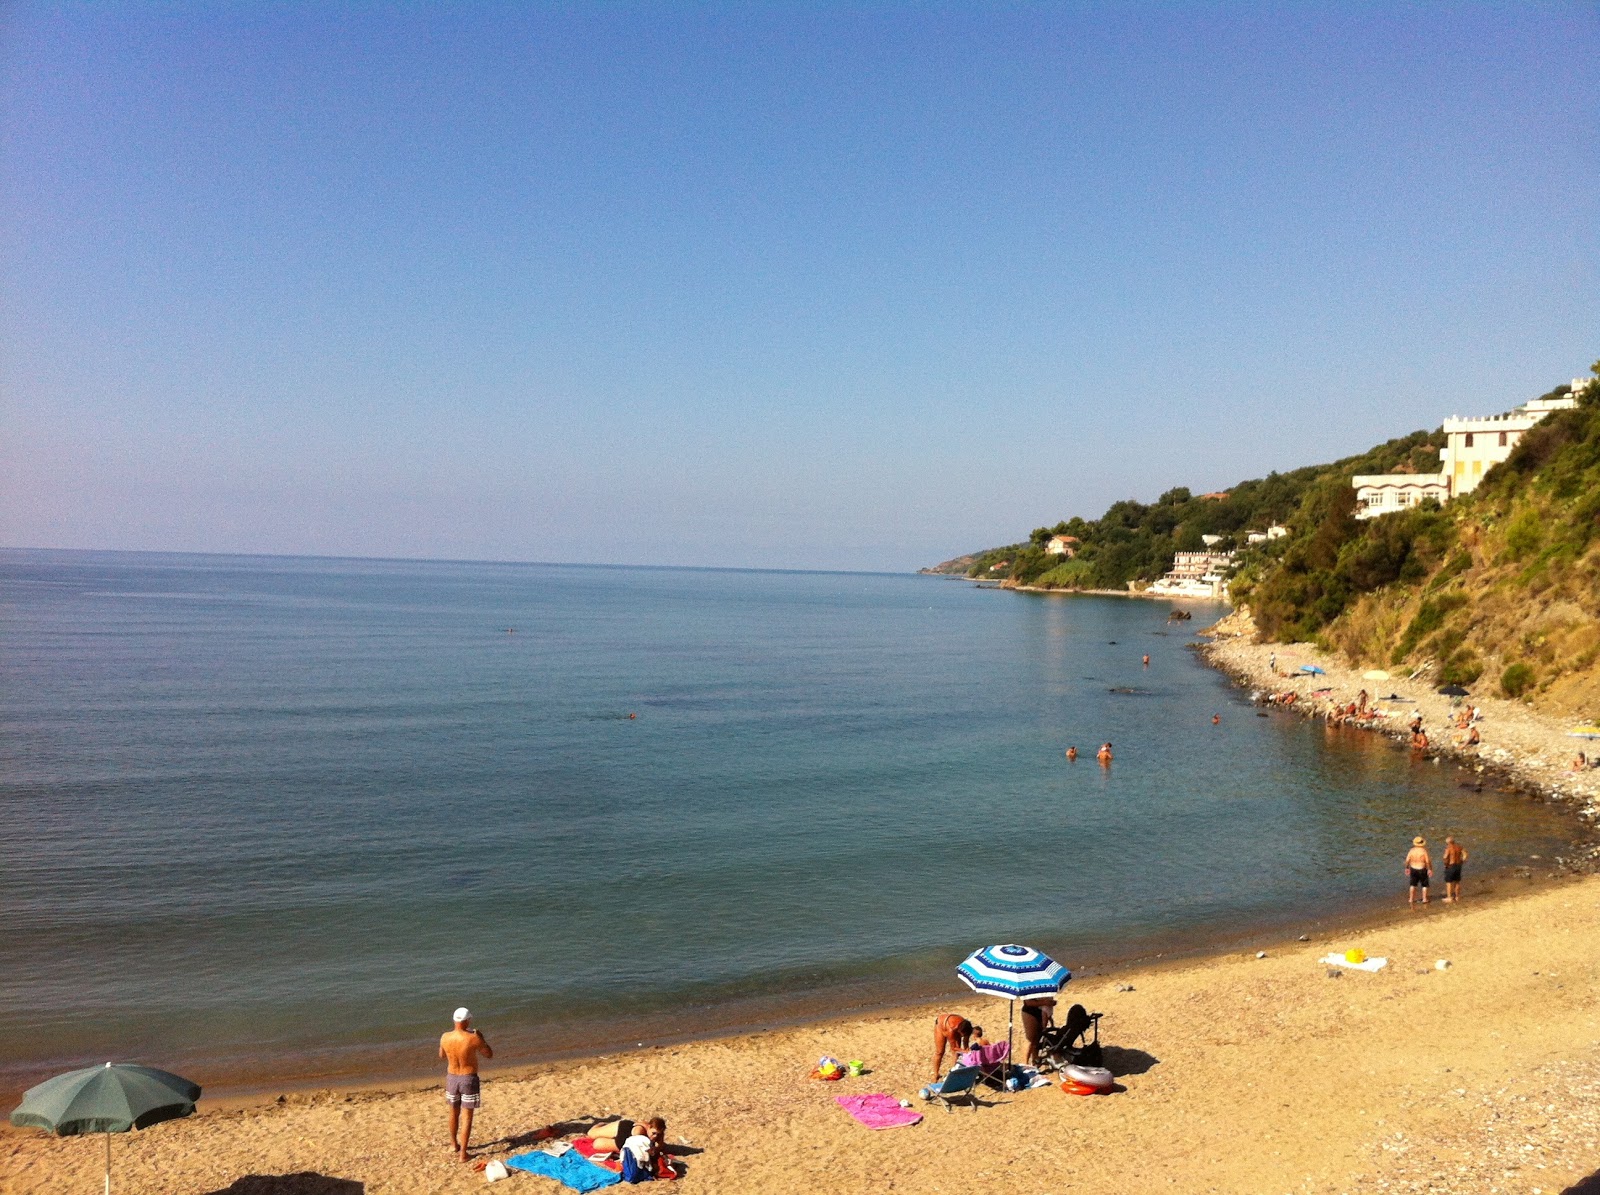 Martina Mare beach'in fotoğrafı kahverengi kum yüzey ile